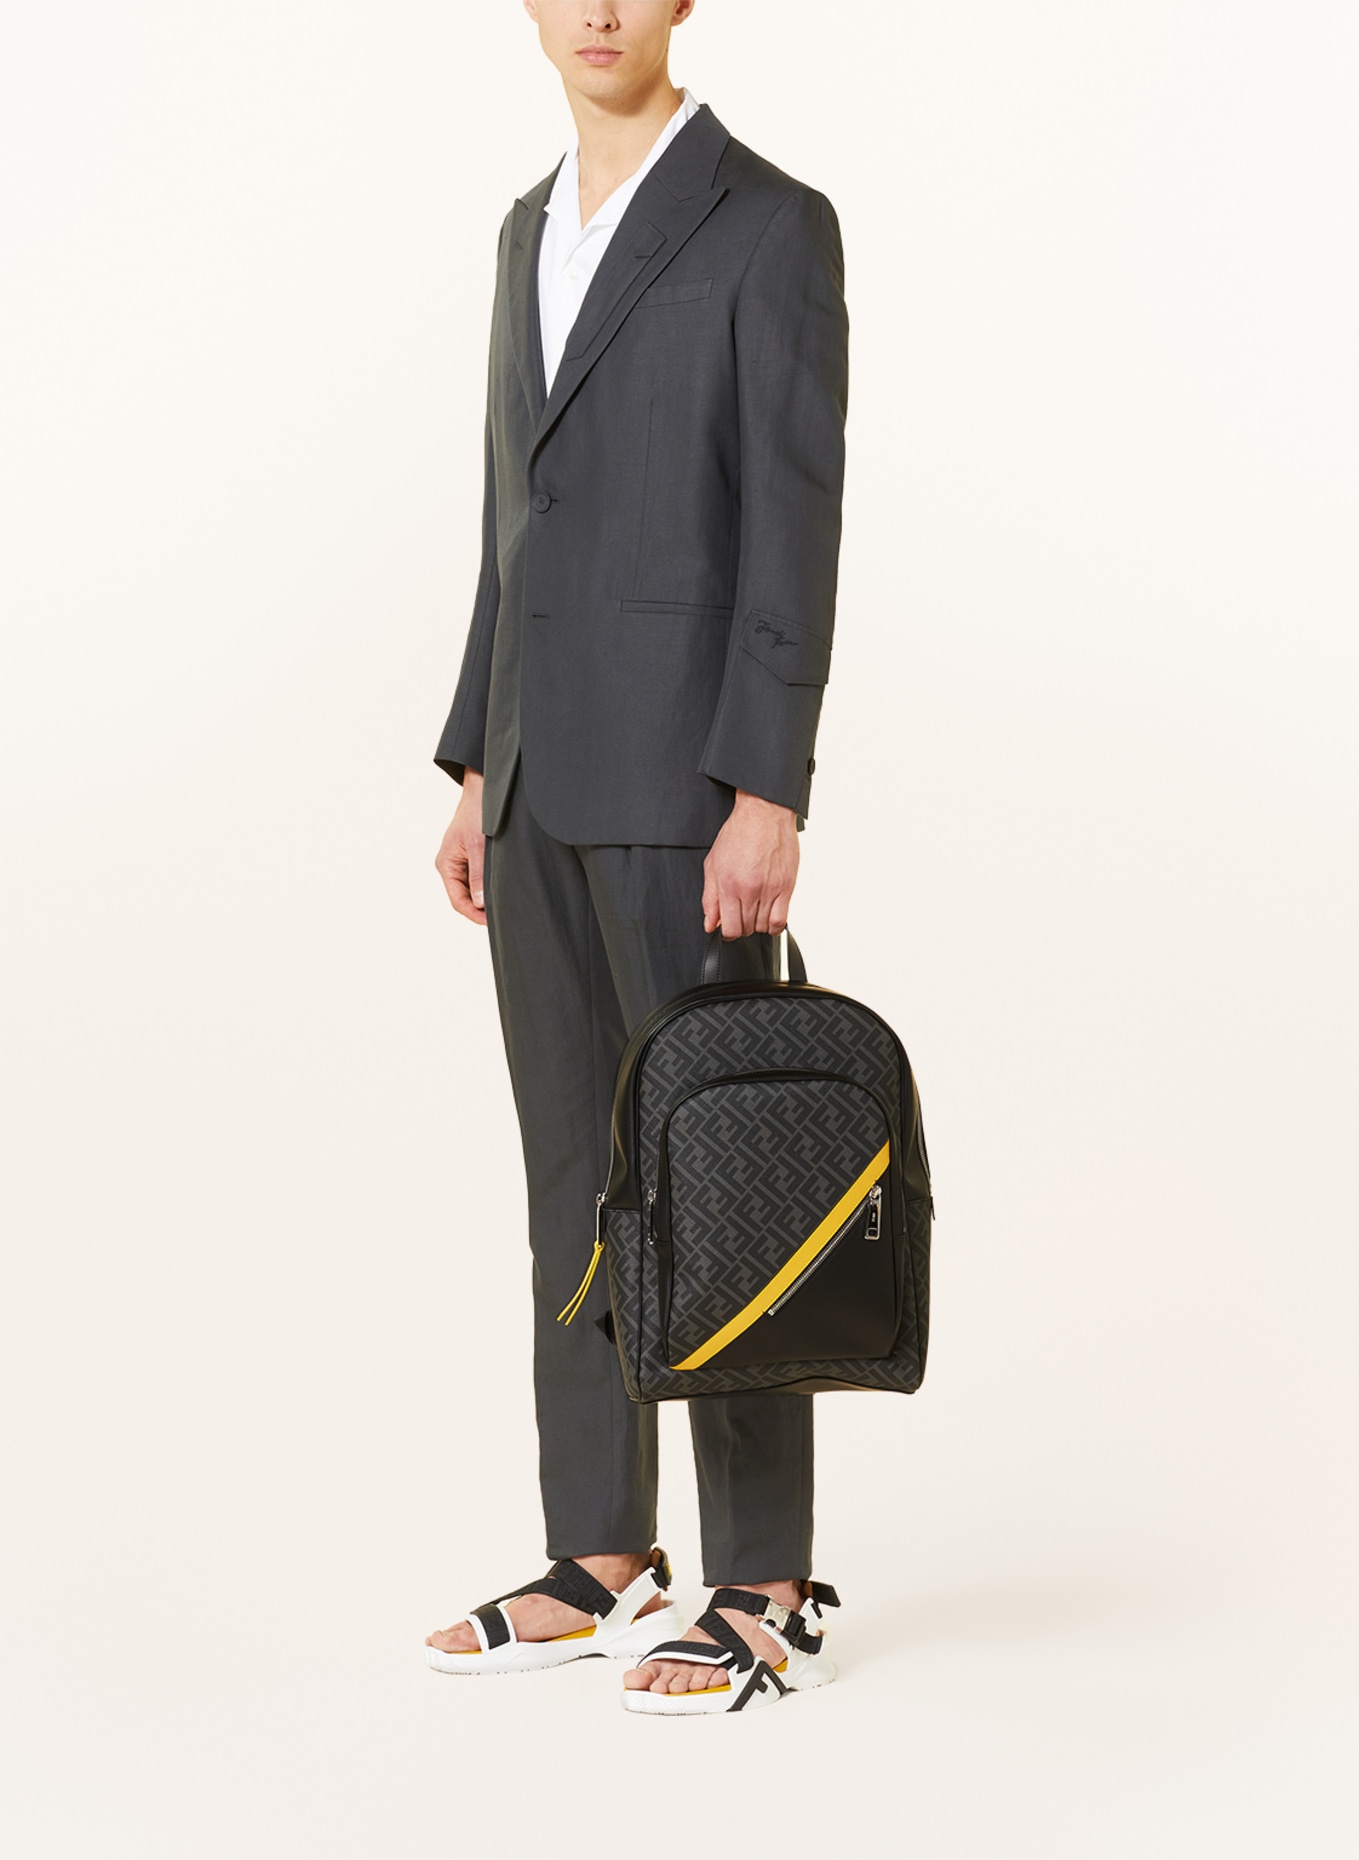 Louis Vuitton Damier Graphite Sweatshirt Jumper MEDIUM SMALL Fit